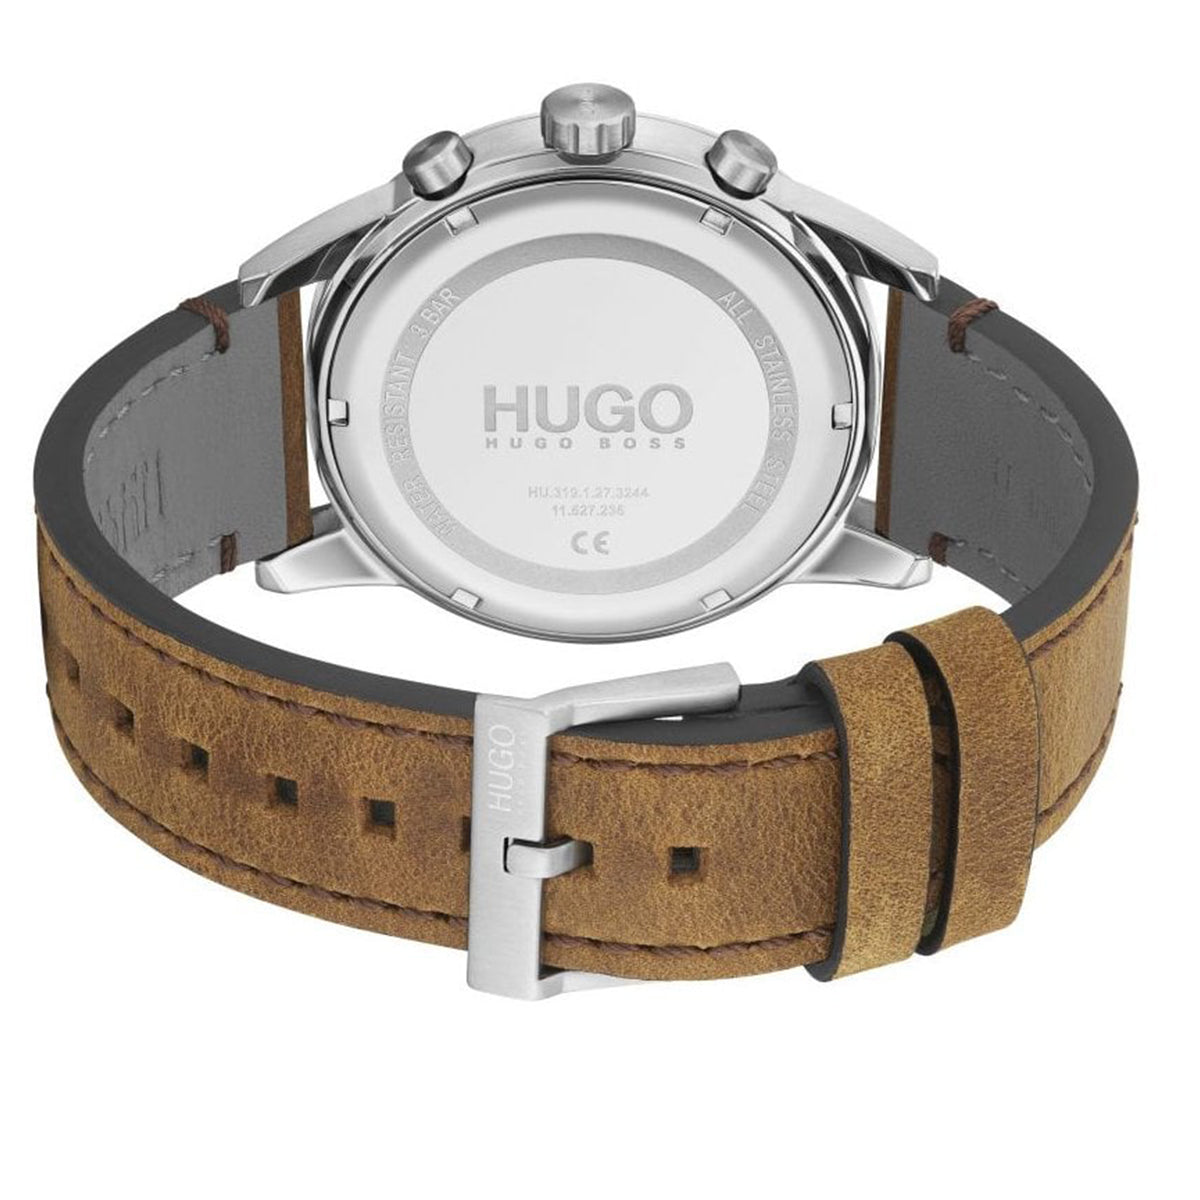 Hugo Boss - Seek - HB153.0150